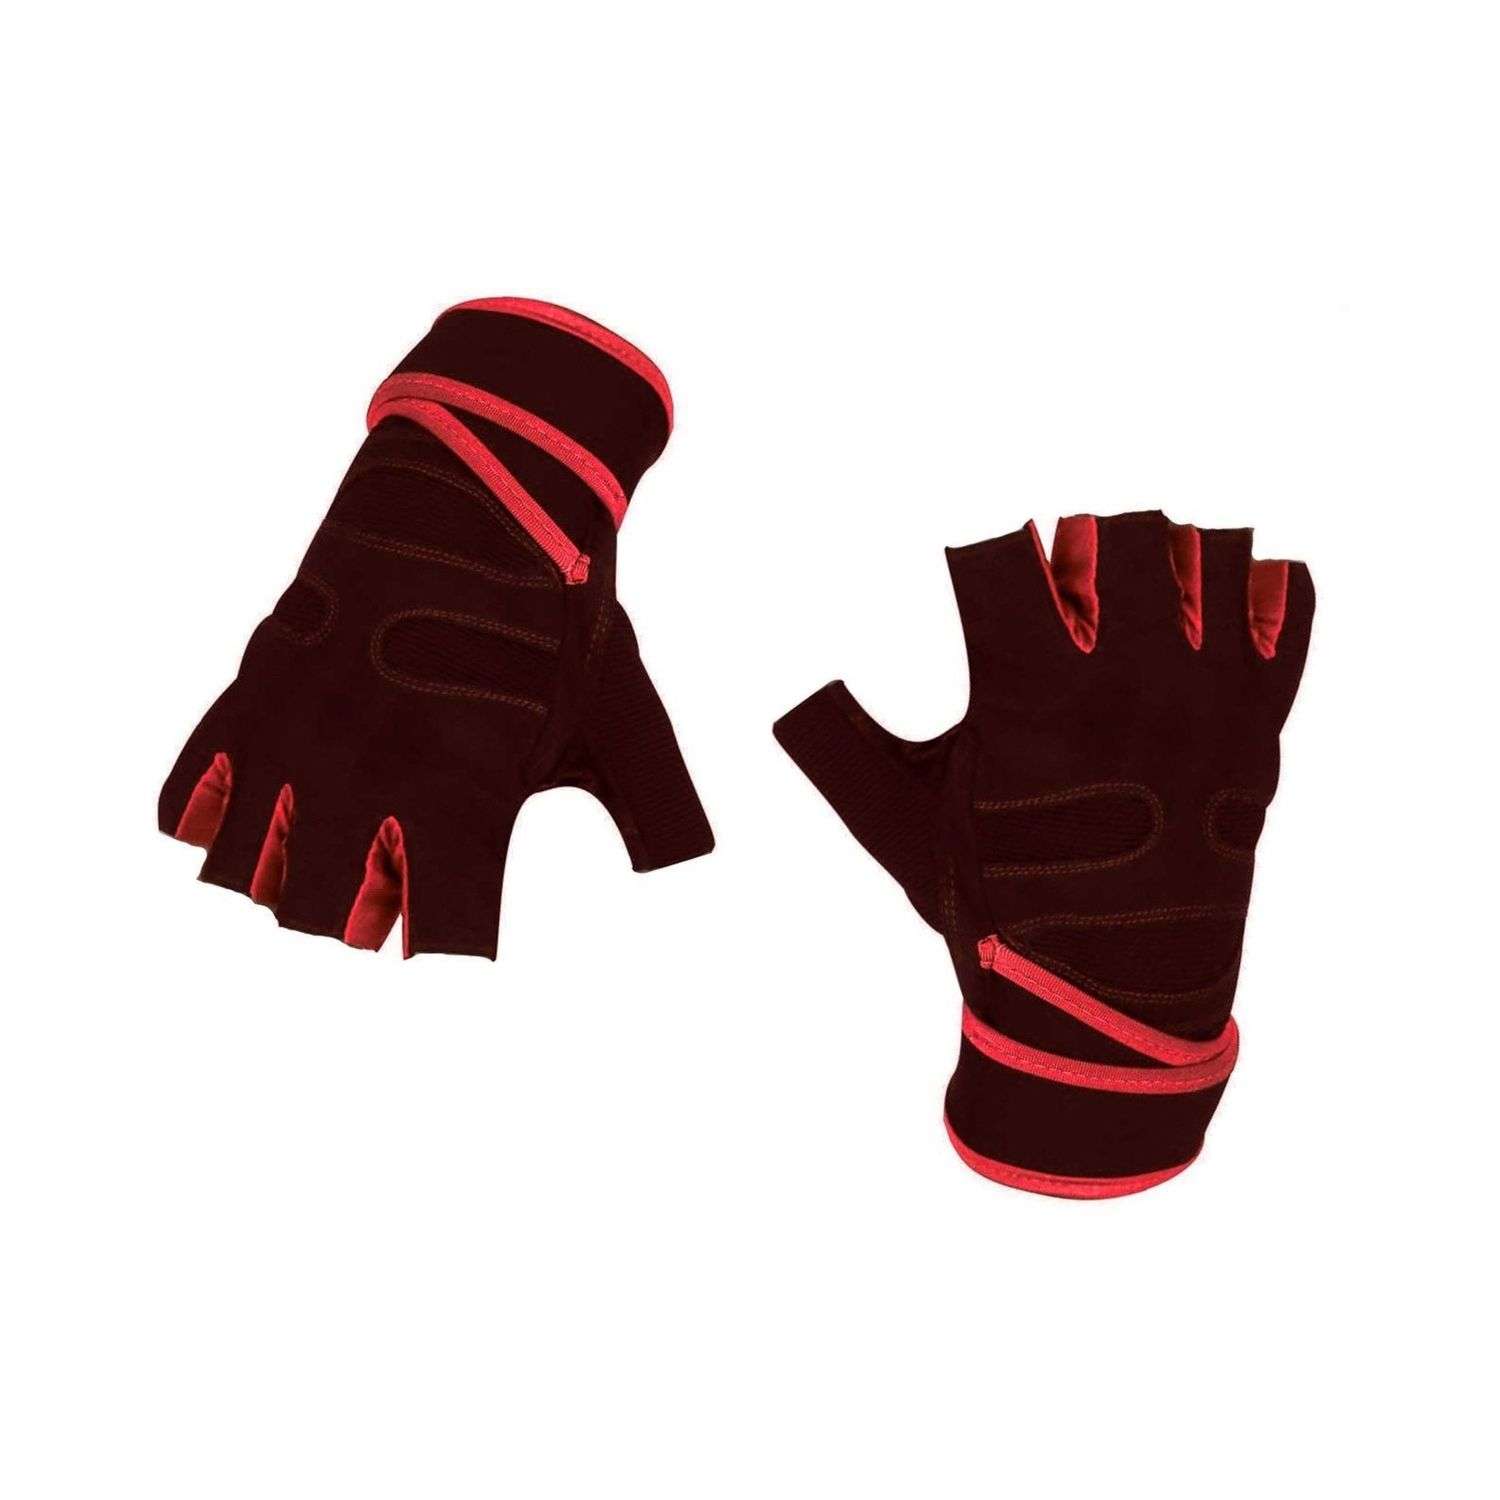 Нейлоновые перчатки NPOSS противоскользящие красные размер XL - фото 1